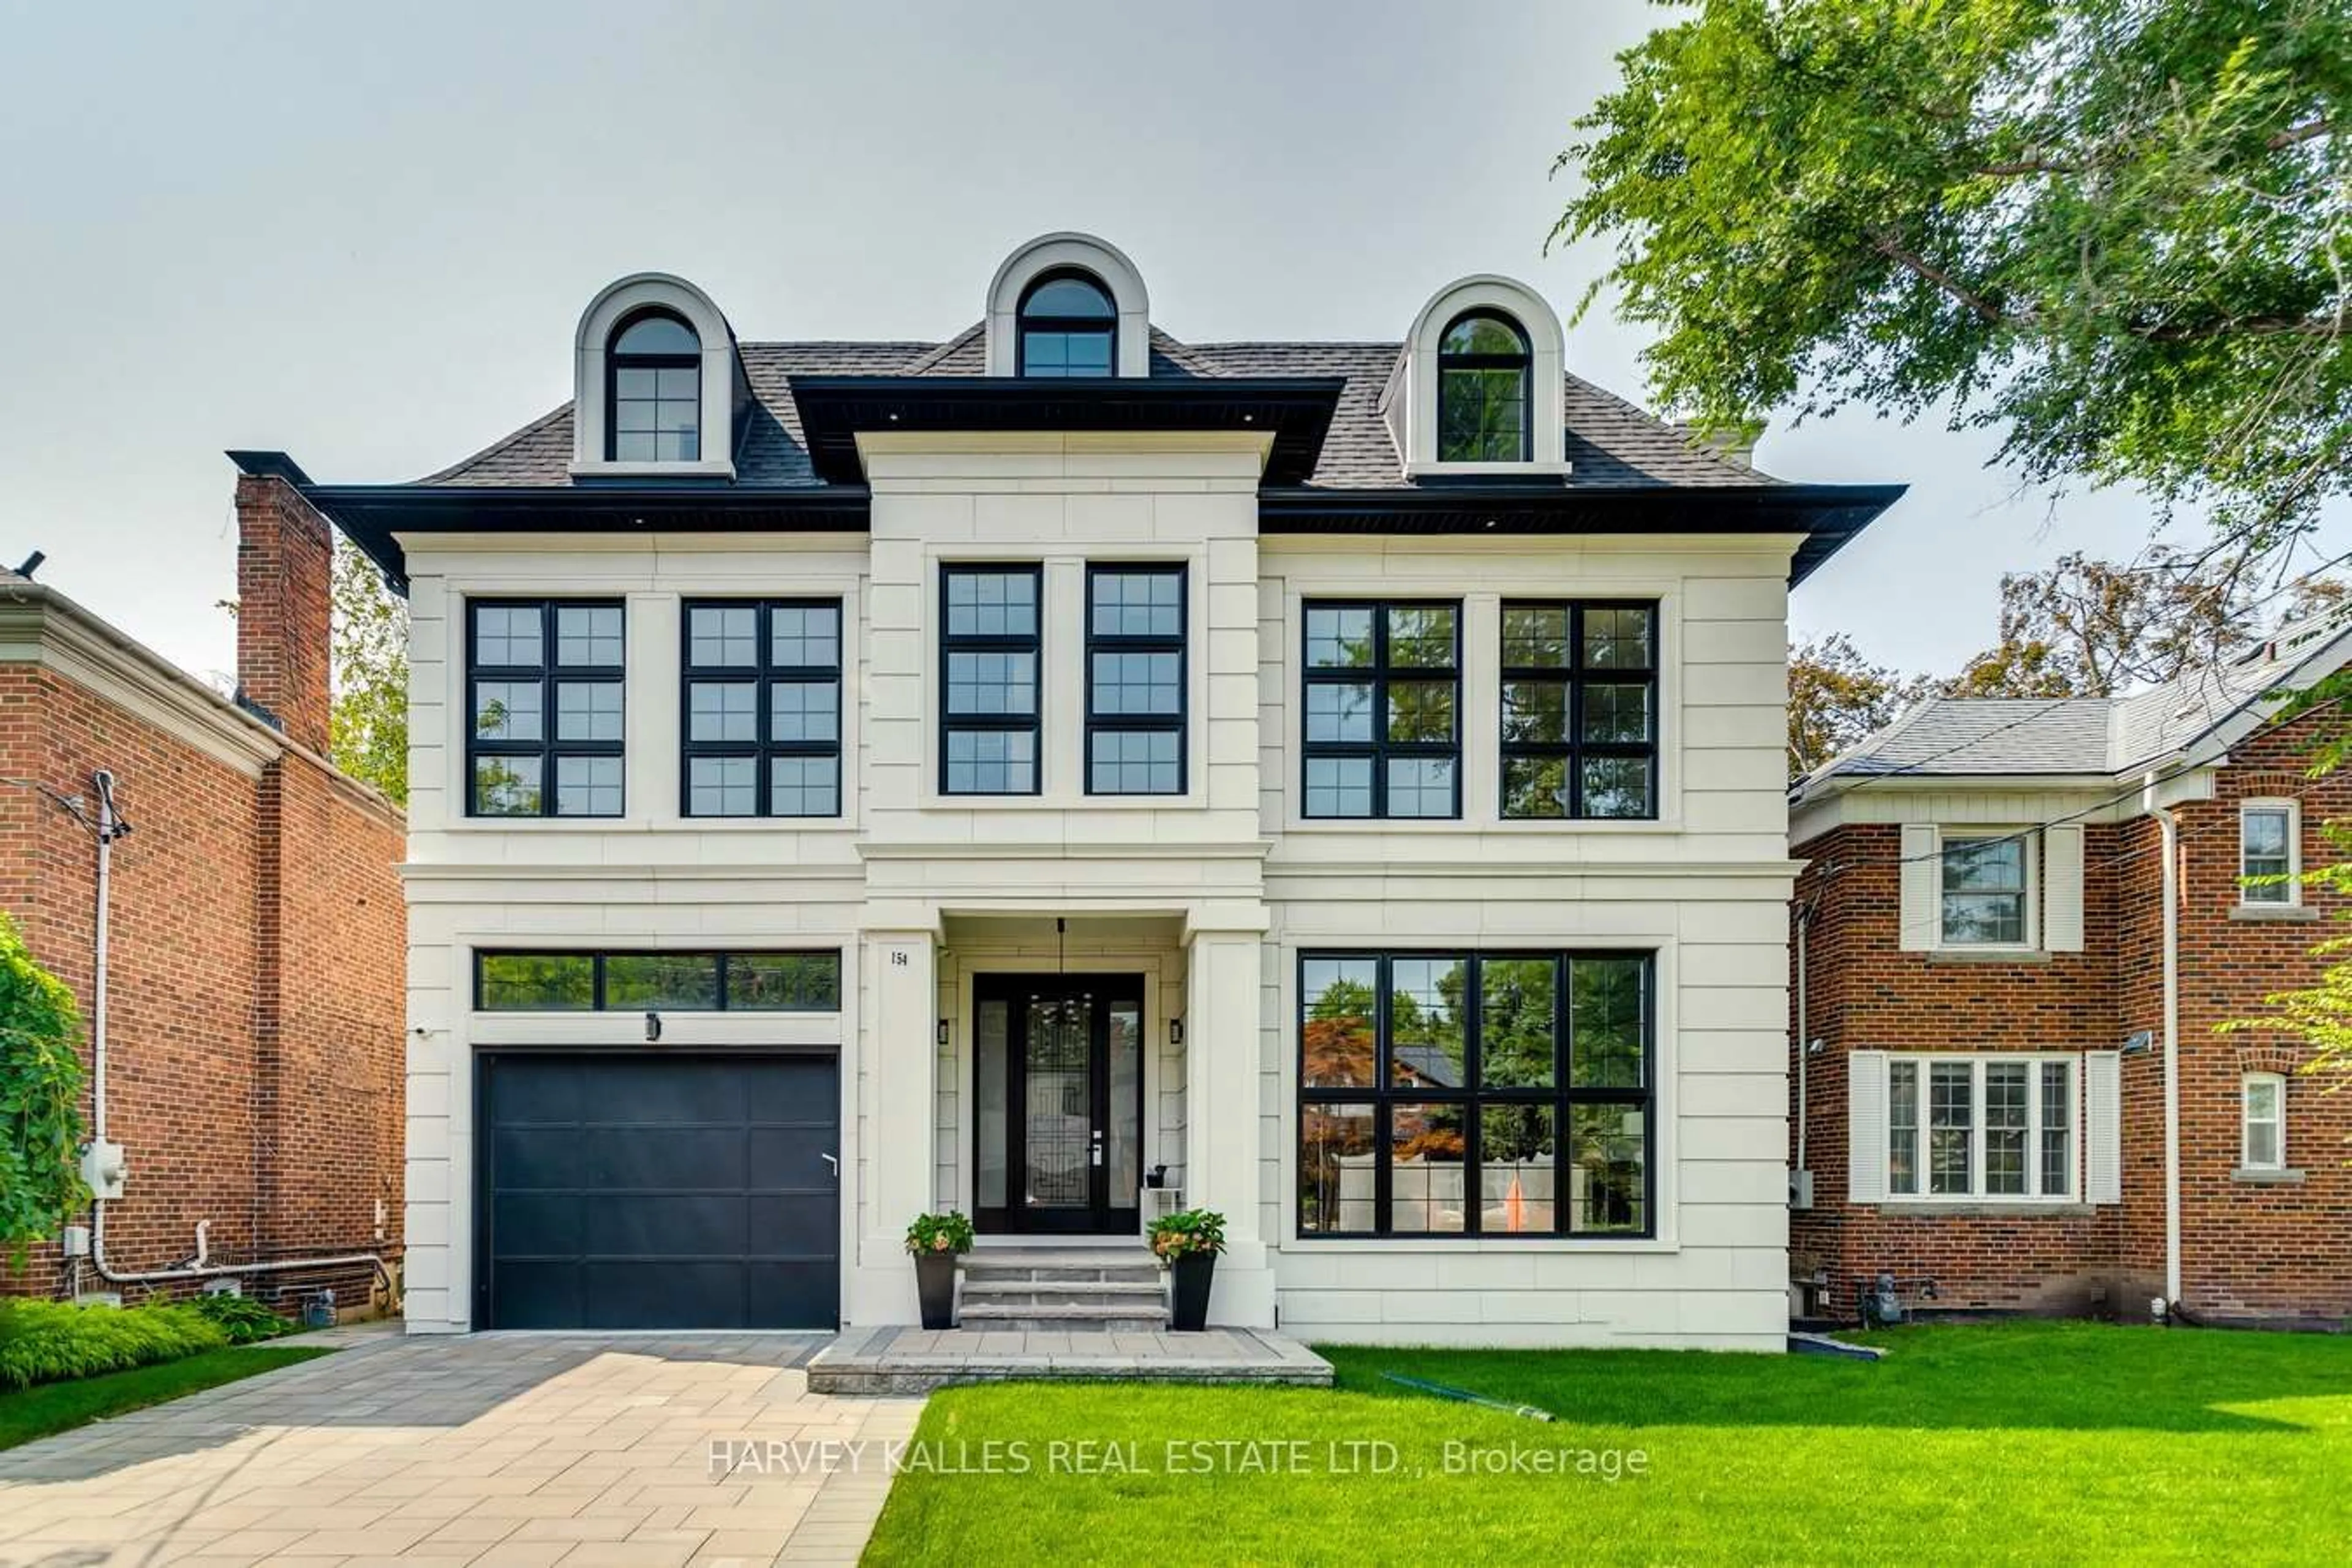 Home with brick exterior material for 154 Glen Cedar Rd, Toronto Ontario M6C 3G5